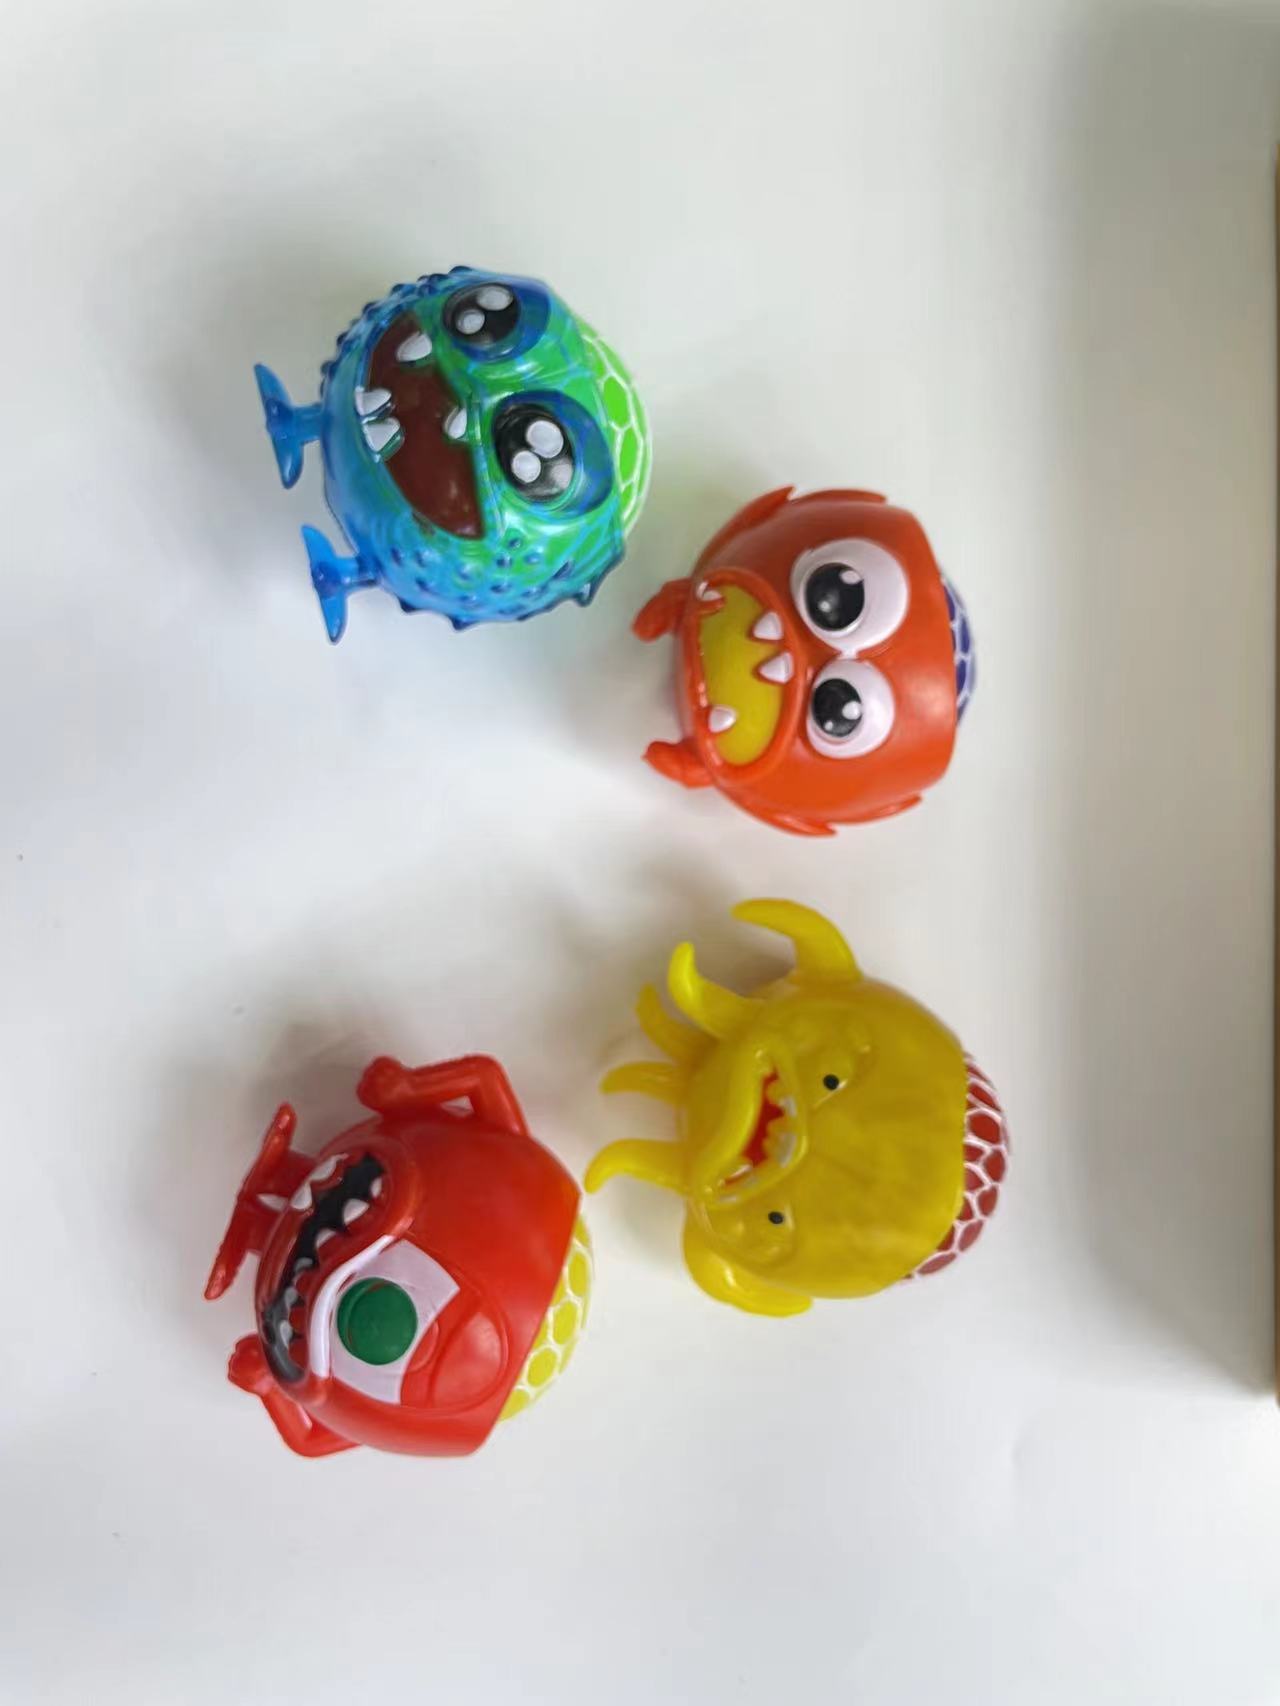 欣飞塑胶玩具搞笑葡萄球发泄玩具怪物葡萄球2895-57